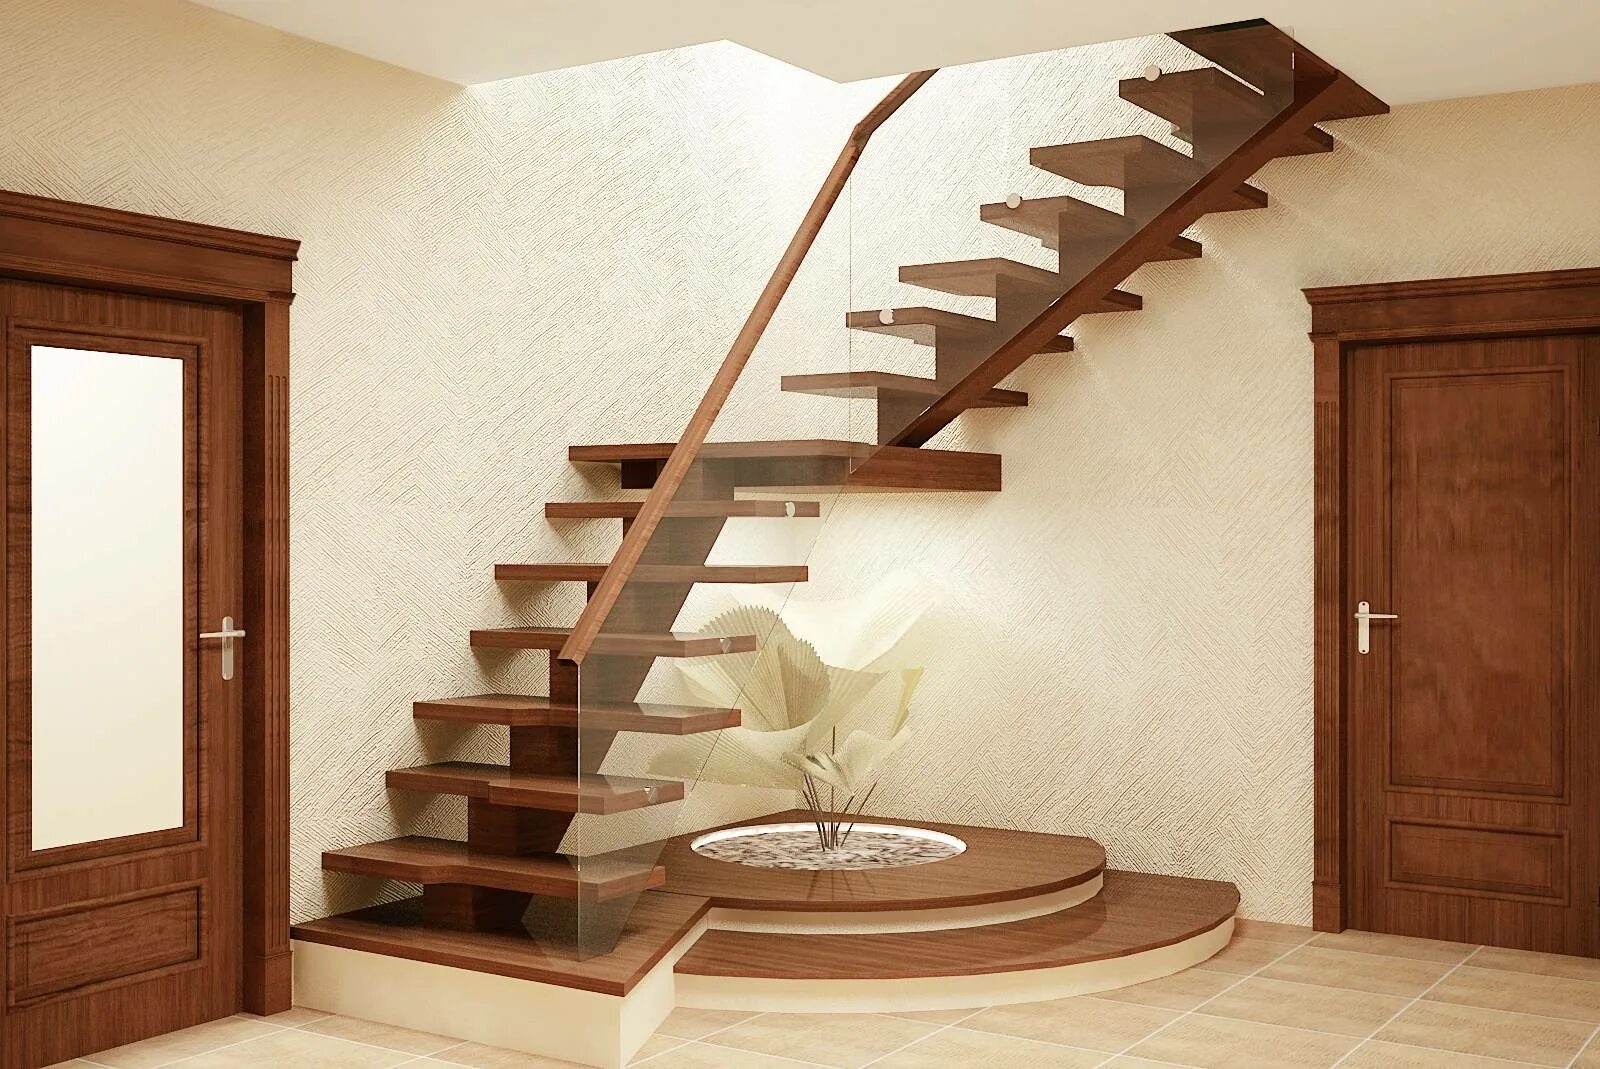 Найти лестницу на второй этаж. Лестница на второй этаж. Лестница в частном доме. Внутренние лестницы. Деревянные лестницы для дома.